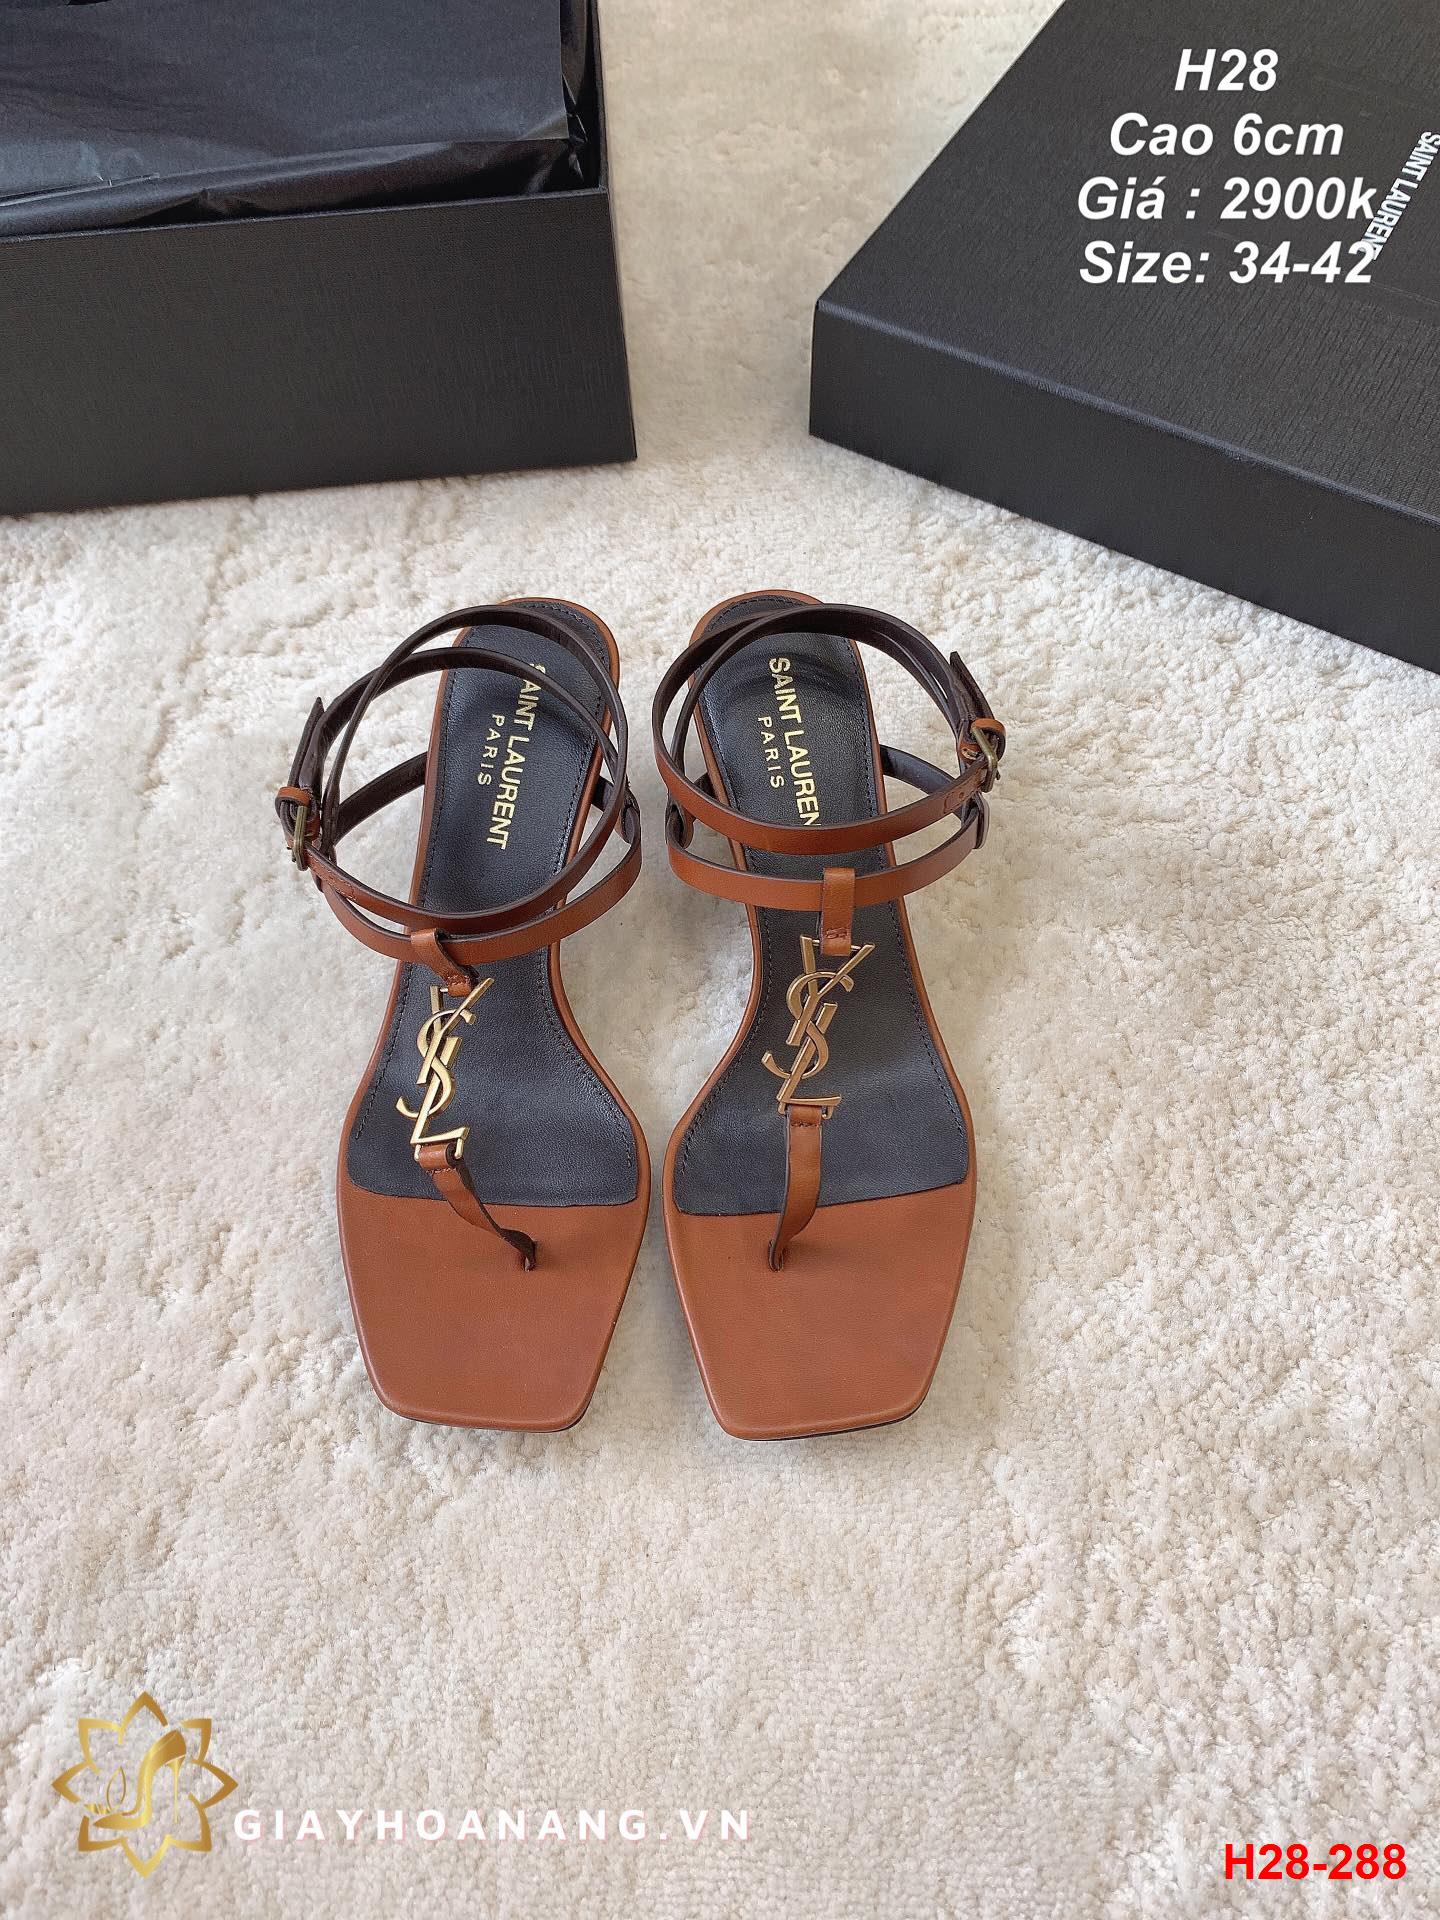 H28-288 Saint Laurent sandal cao 6cm siêu cấp